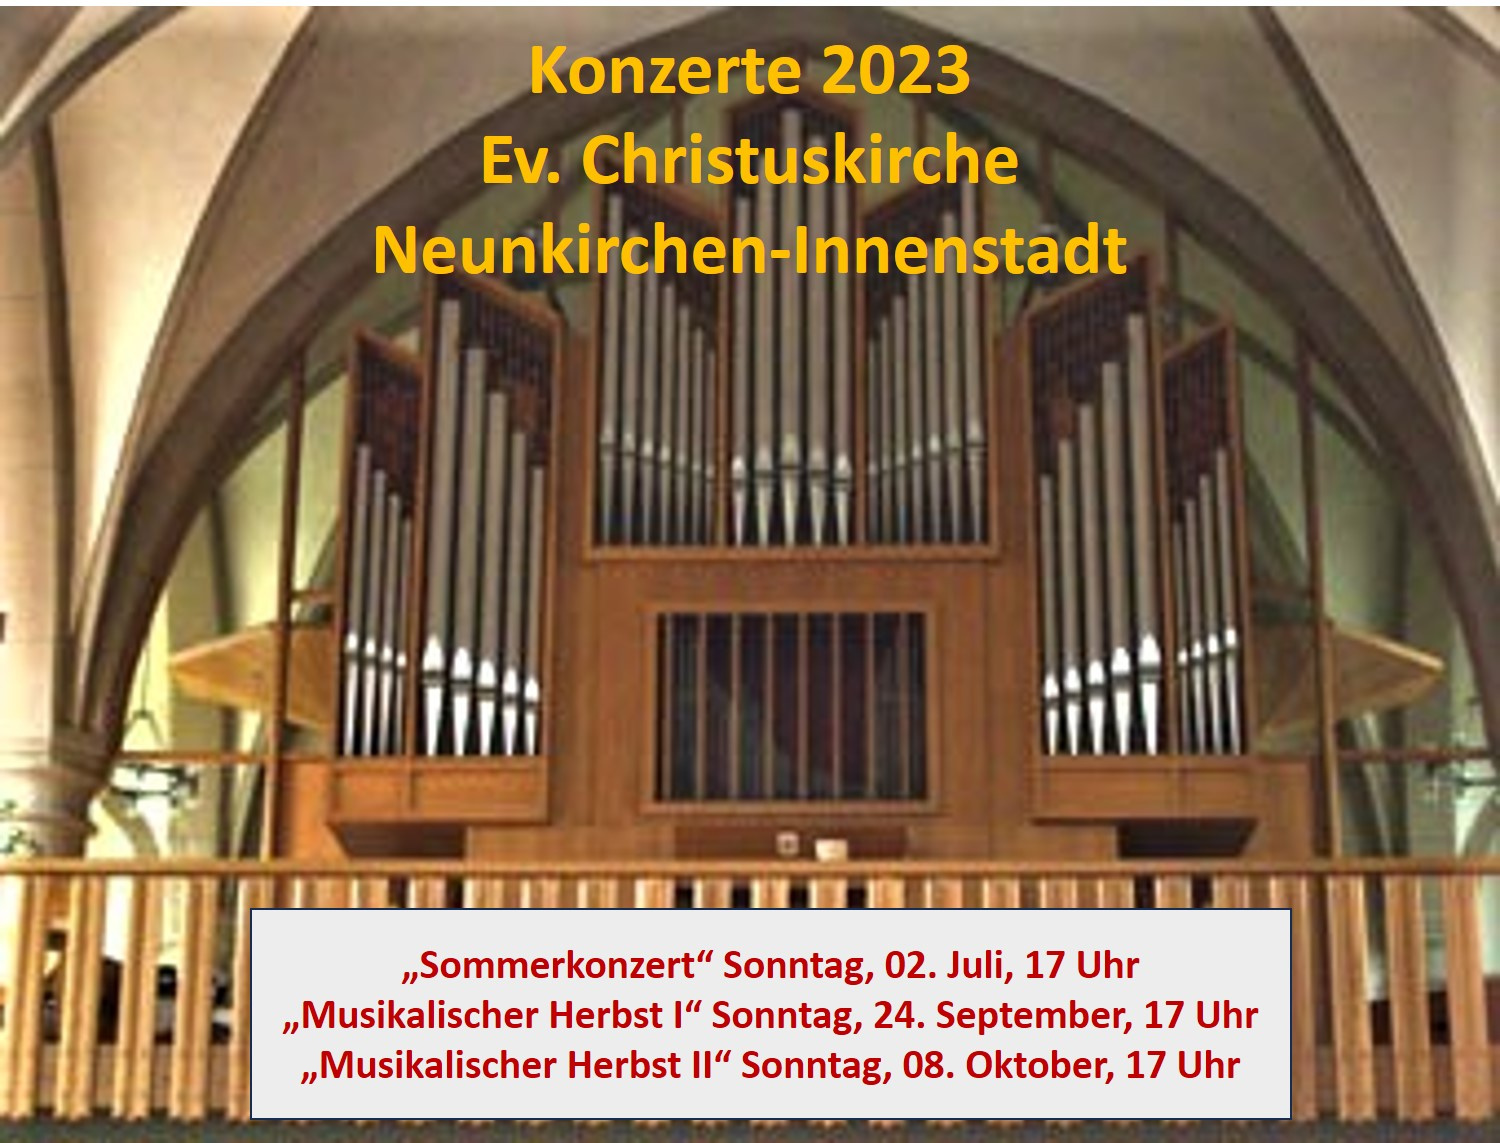 NK - Konzerte in der Christuskirche